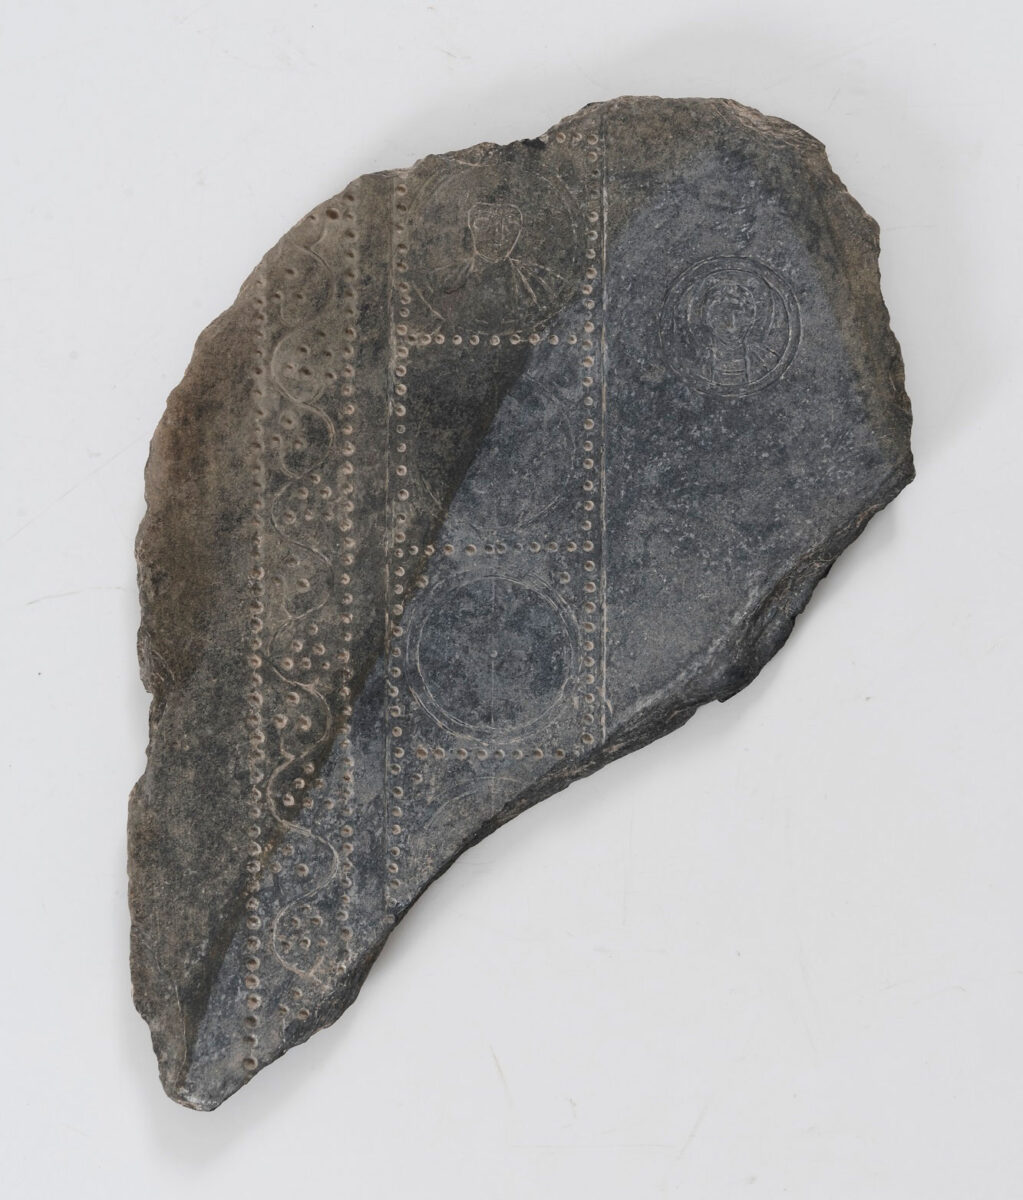 Ημίεργη σχιστολιθική πλάκα, 5ος-6ος αι. μ.Χ. Η πλάκα βρέθηκε τυχαία από τον Γεώργιο Σωτηρίου στον αρχαιολογικό χώρο της μεσαιωνικής Εφέσου (Αγιασολούκ). Βυζαντινό και Χριστιανικό Μουσείο, ΒΧΜ 2911.